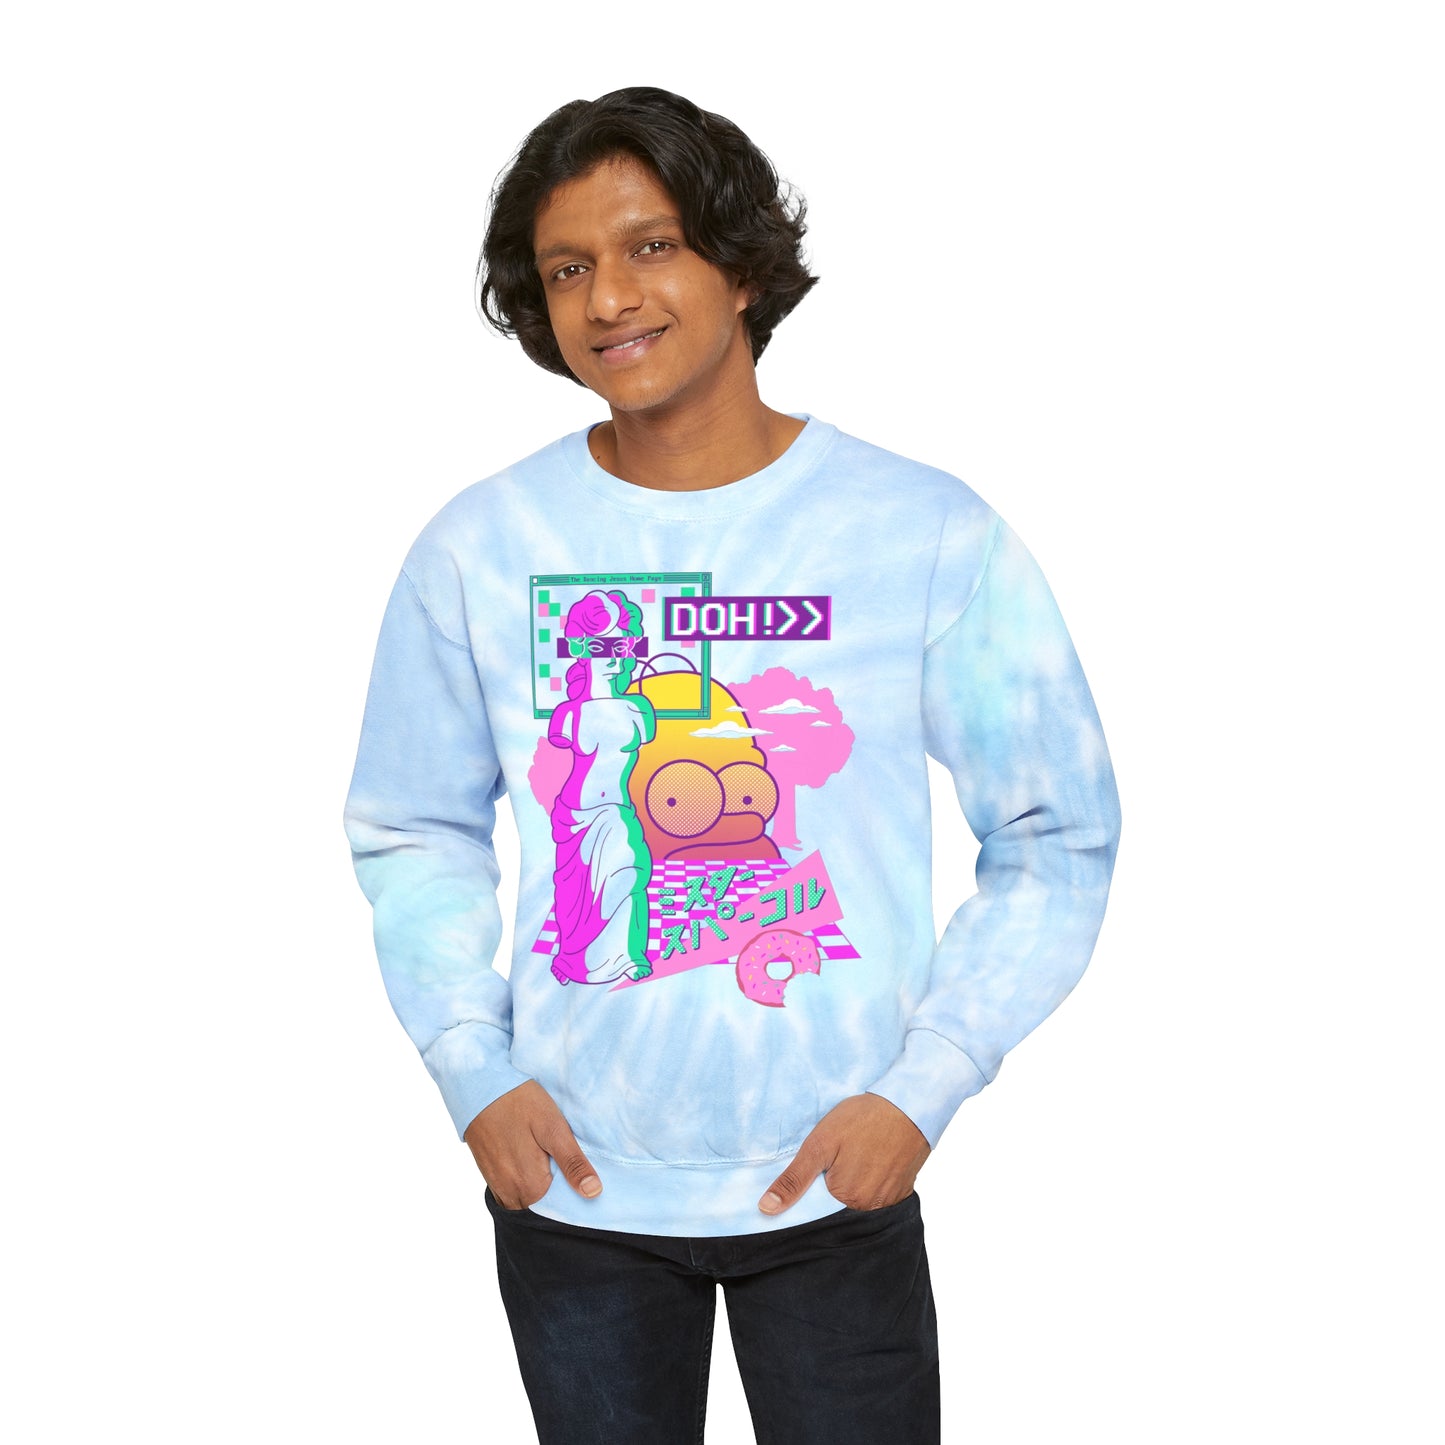 Vapor De Milo tie-dye sweatshirt